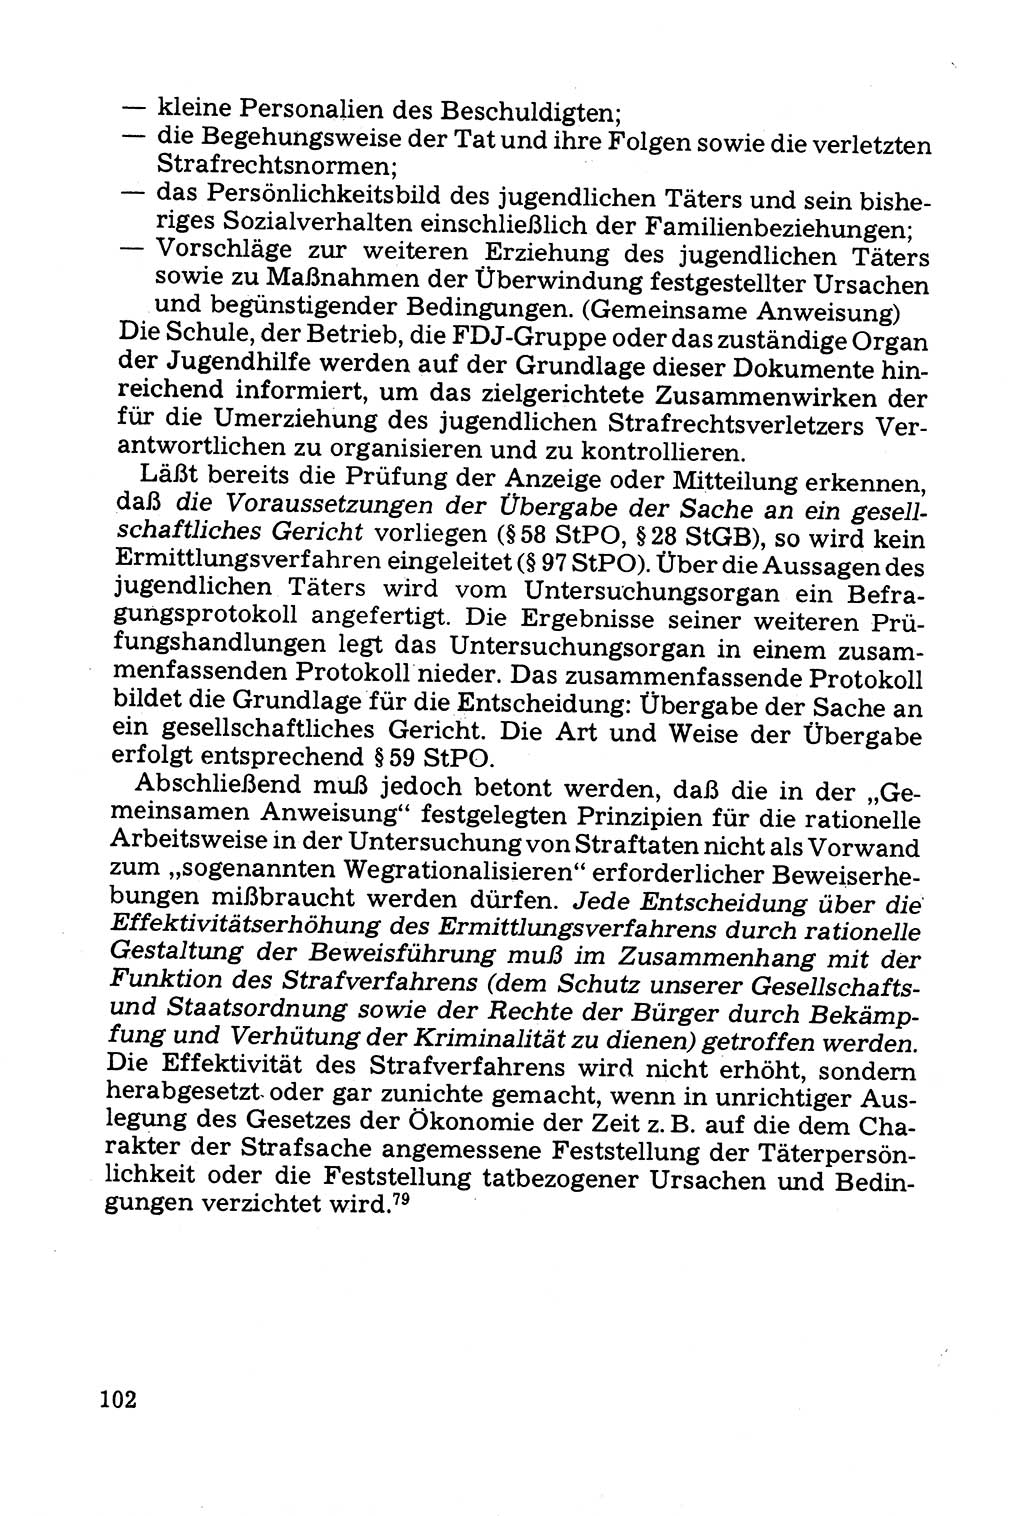 Grundfragen der Beweisführung im Ermittlungsverfahren [Deutsche Demokratische Republik (DDR)] 1980, Seite 102 (Bws.-Fhrg. EV DDR 1980, S. 102)